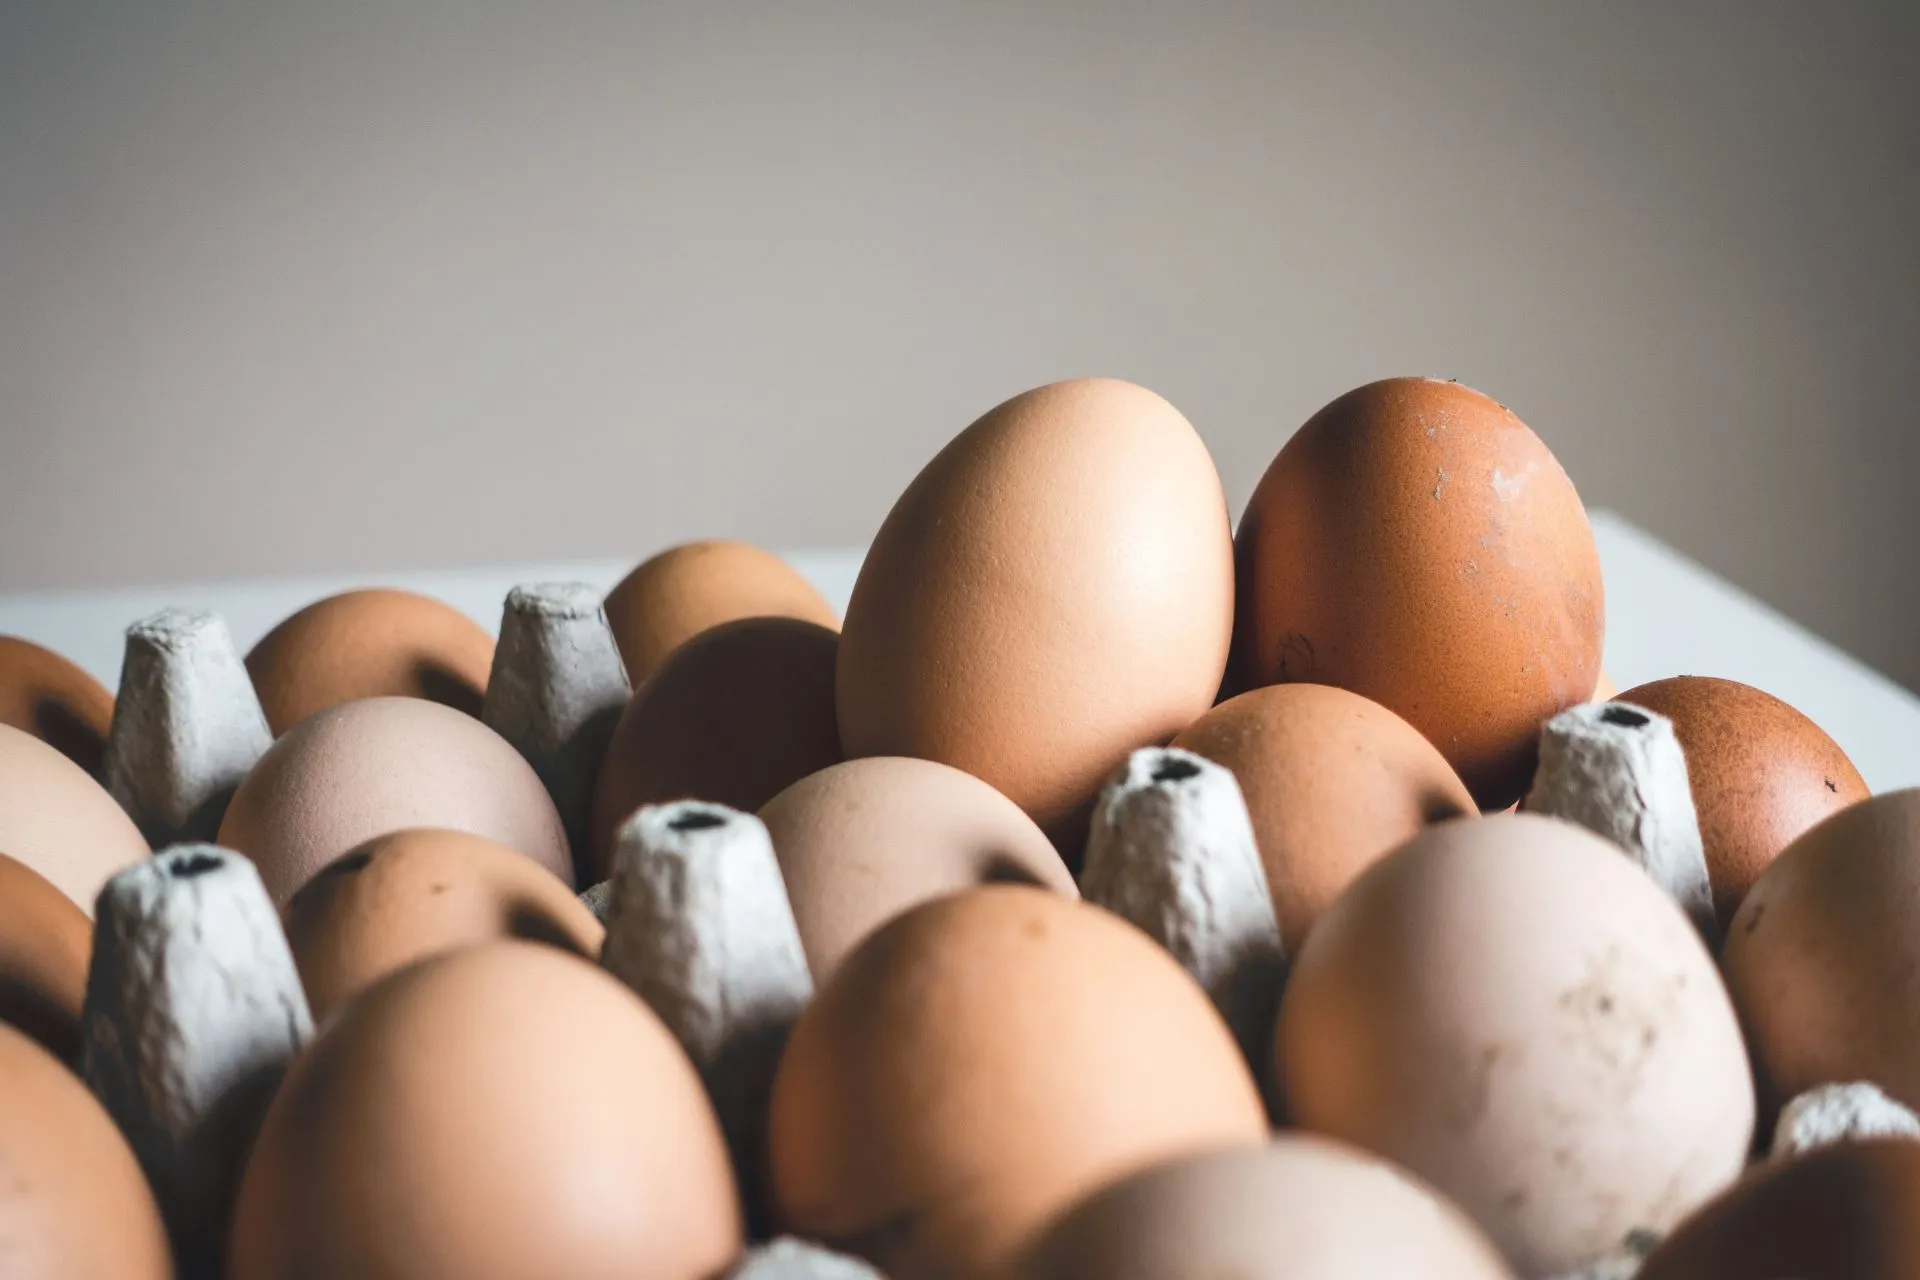 Zachtgekookte eieren zijn een populair ontbijtproduct.  (Afbeelding via Unsplash/Jakub Kapusnak)